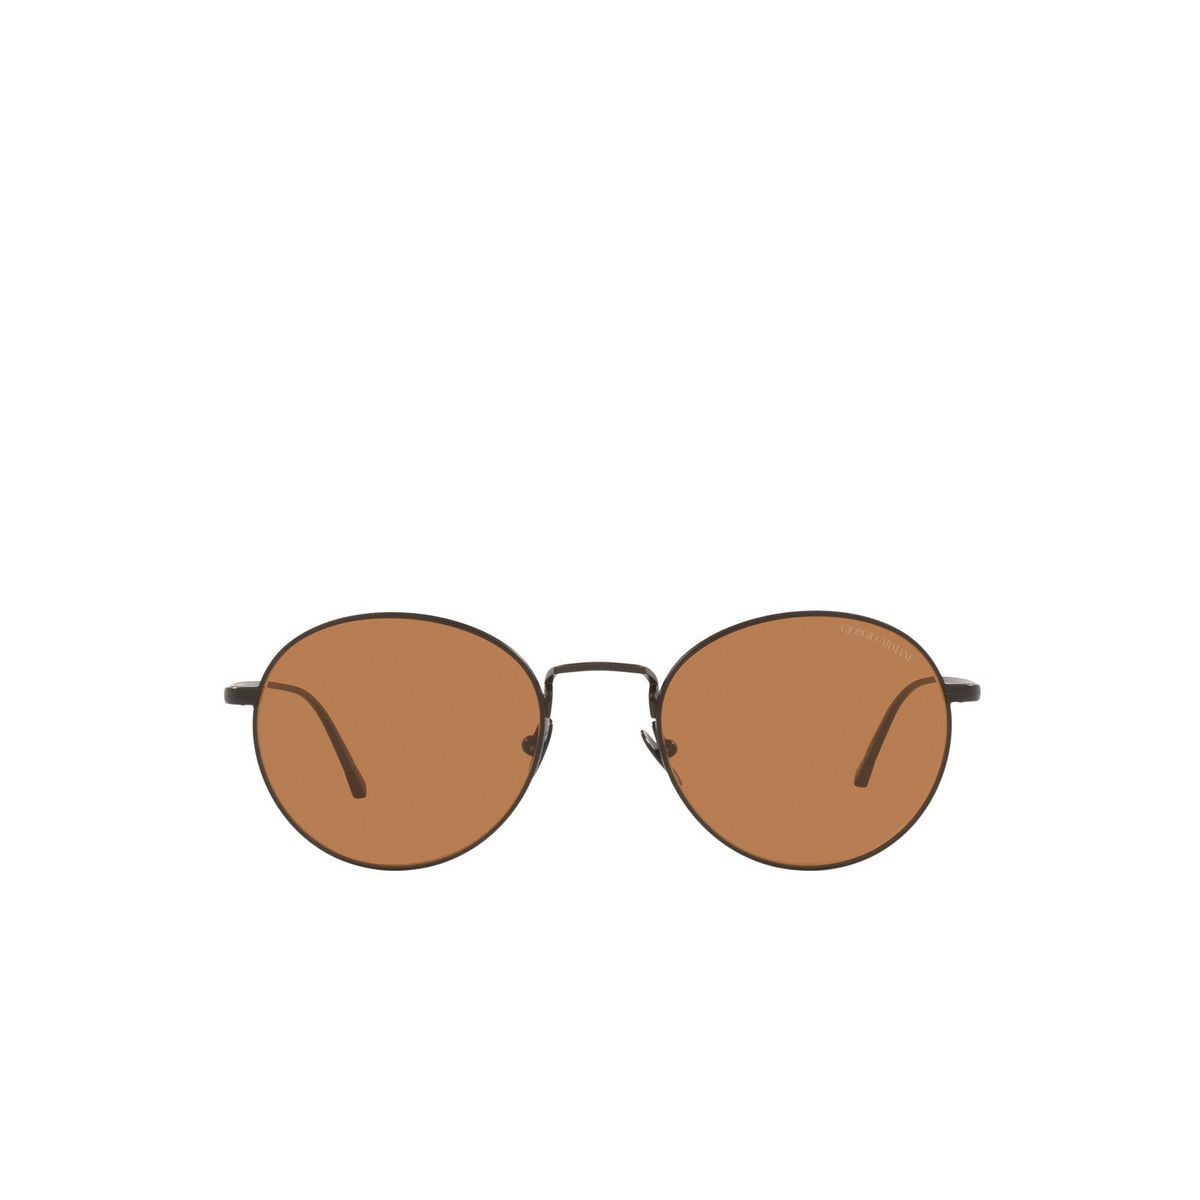 Giorgio Armani® Oval Sunglasses: AR6125 color Matte Black 300173 - front view.